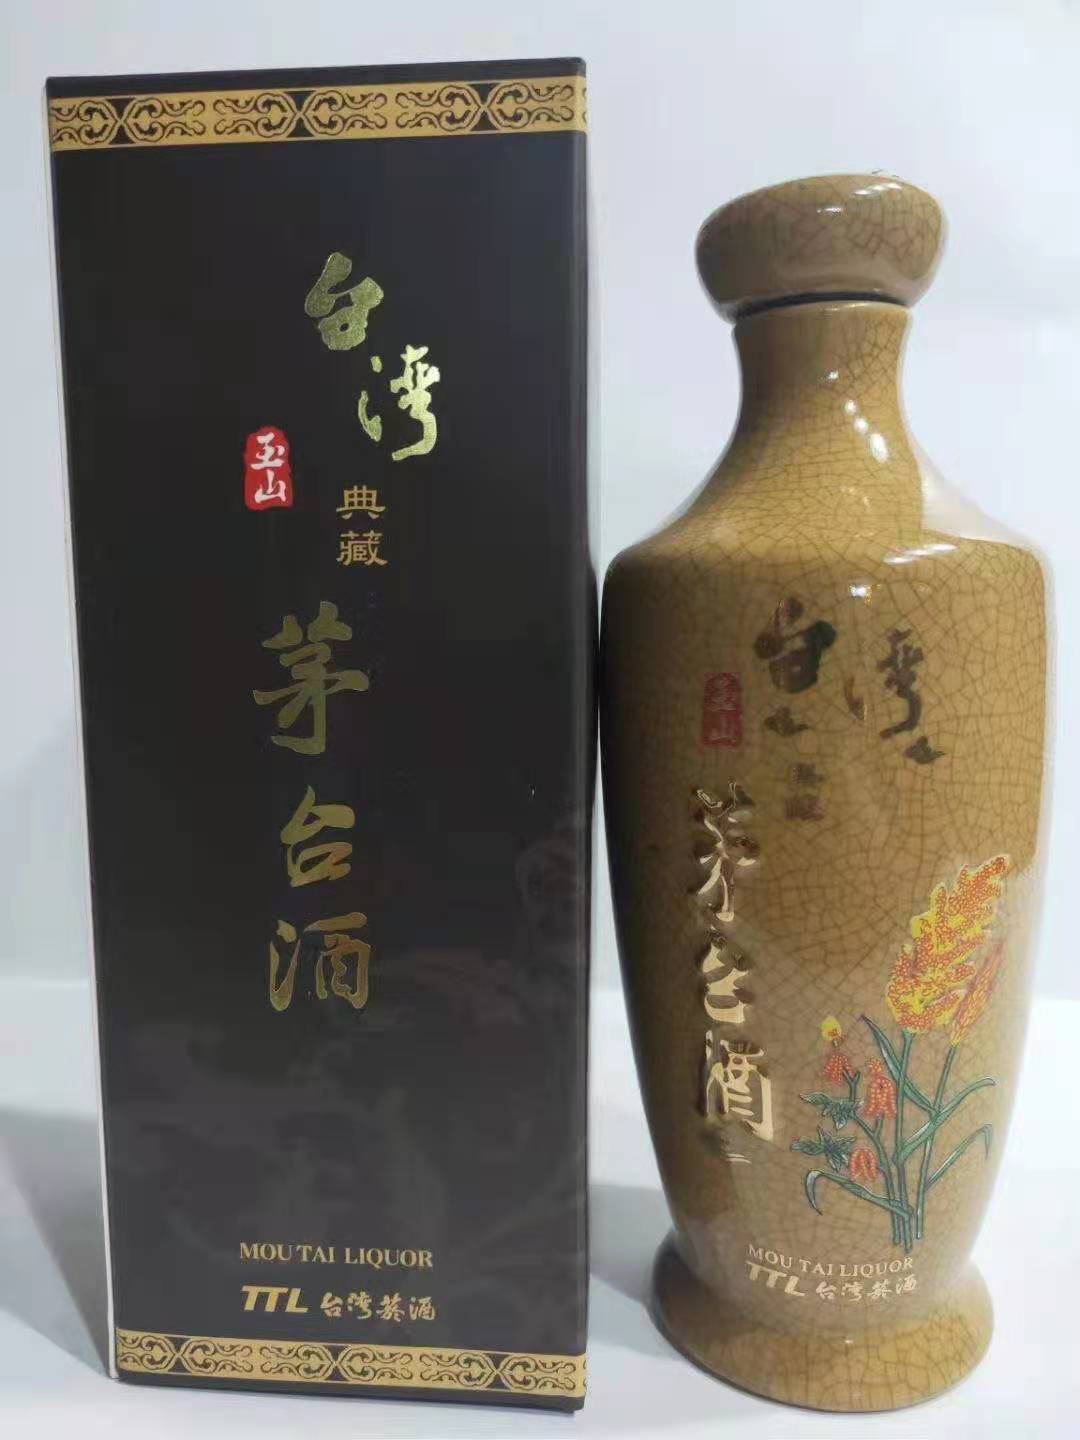 TTL菸酒公卖局53度中国台湾玉山典藏**酒0.5公升